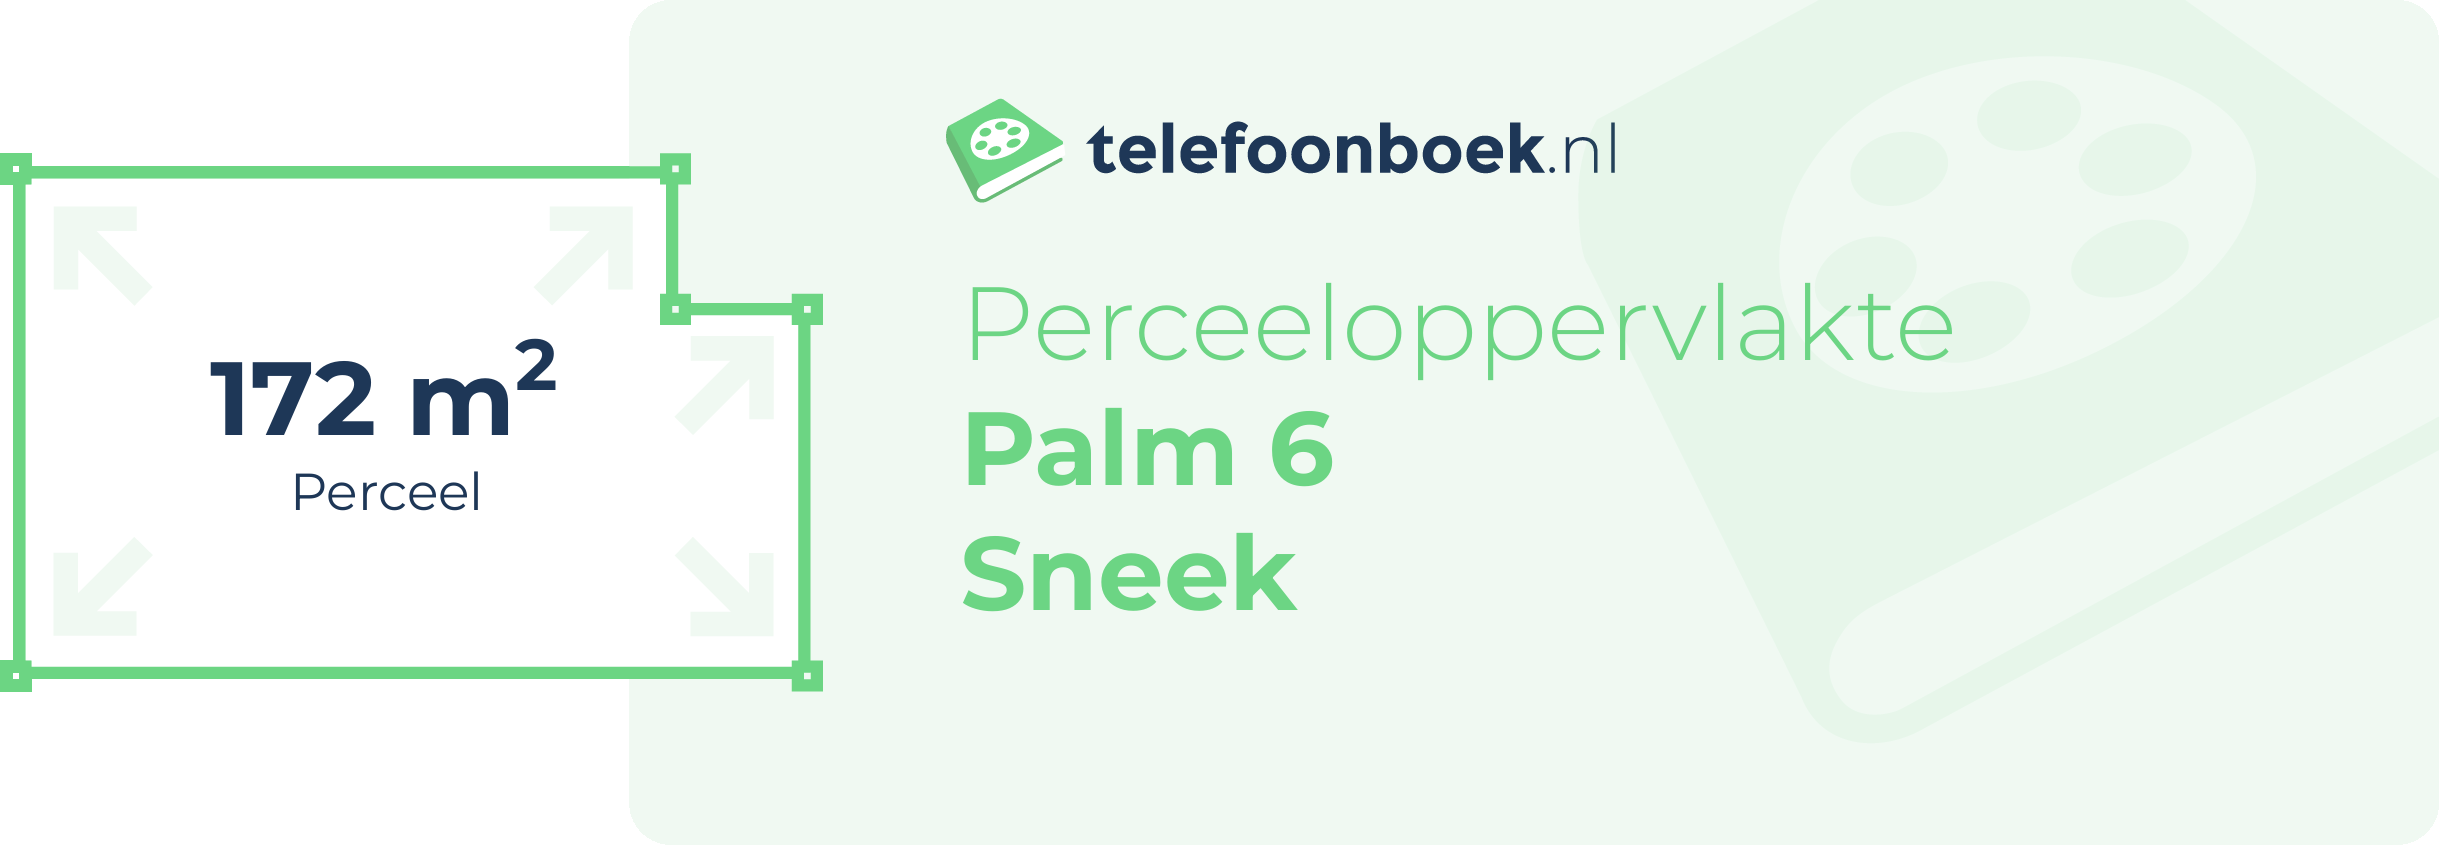 Perceeloppervlakte Palm 6 Sneek